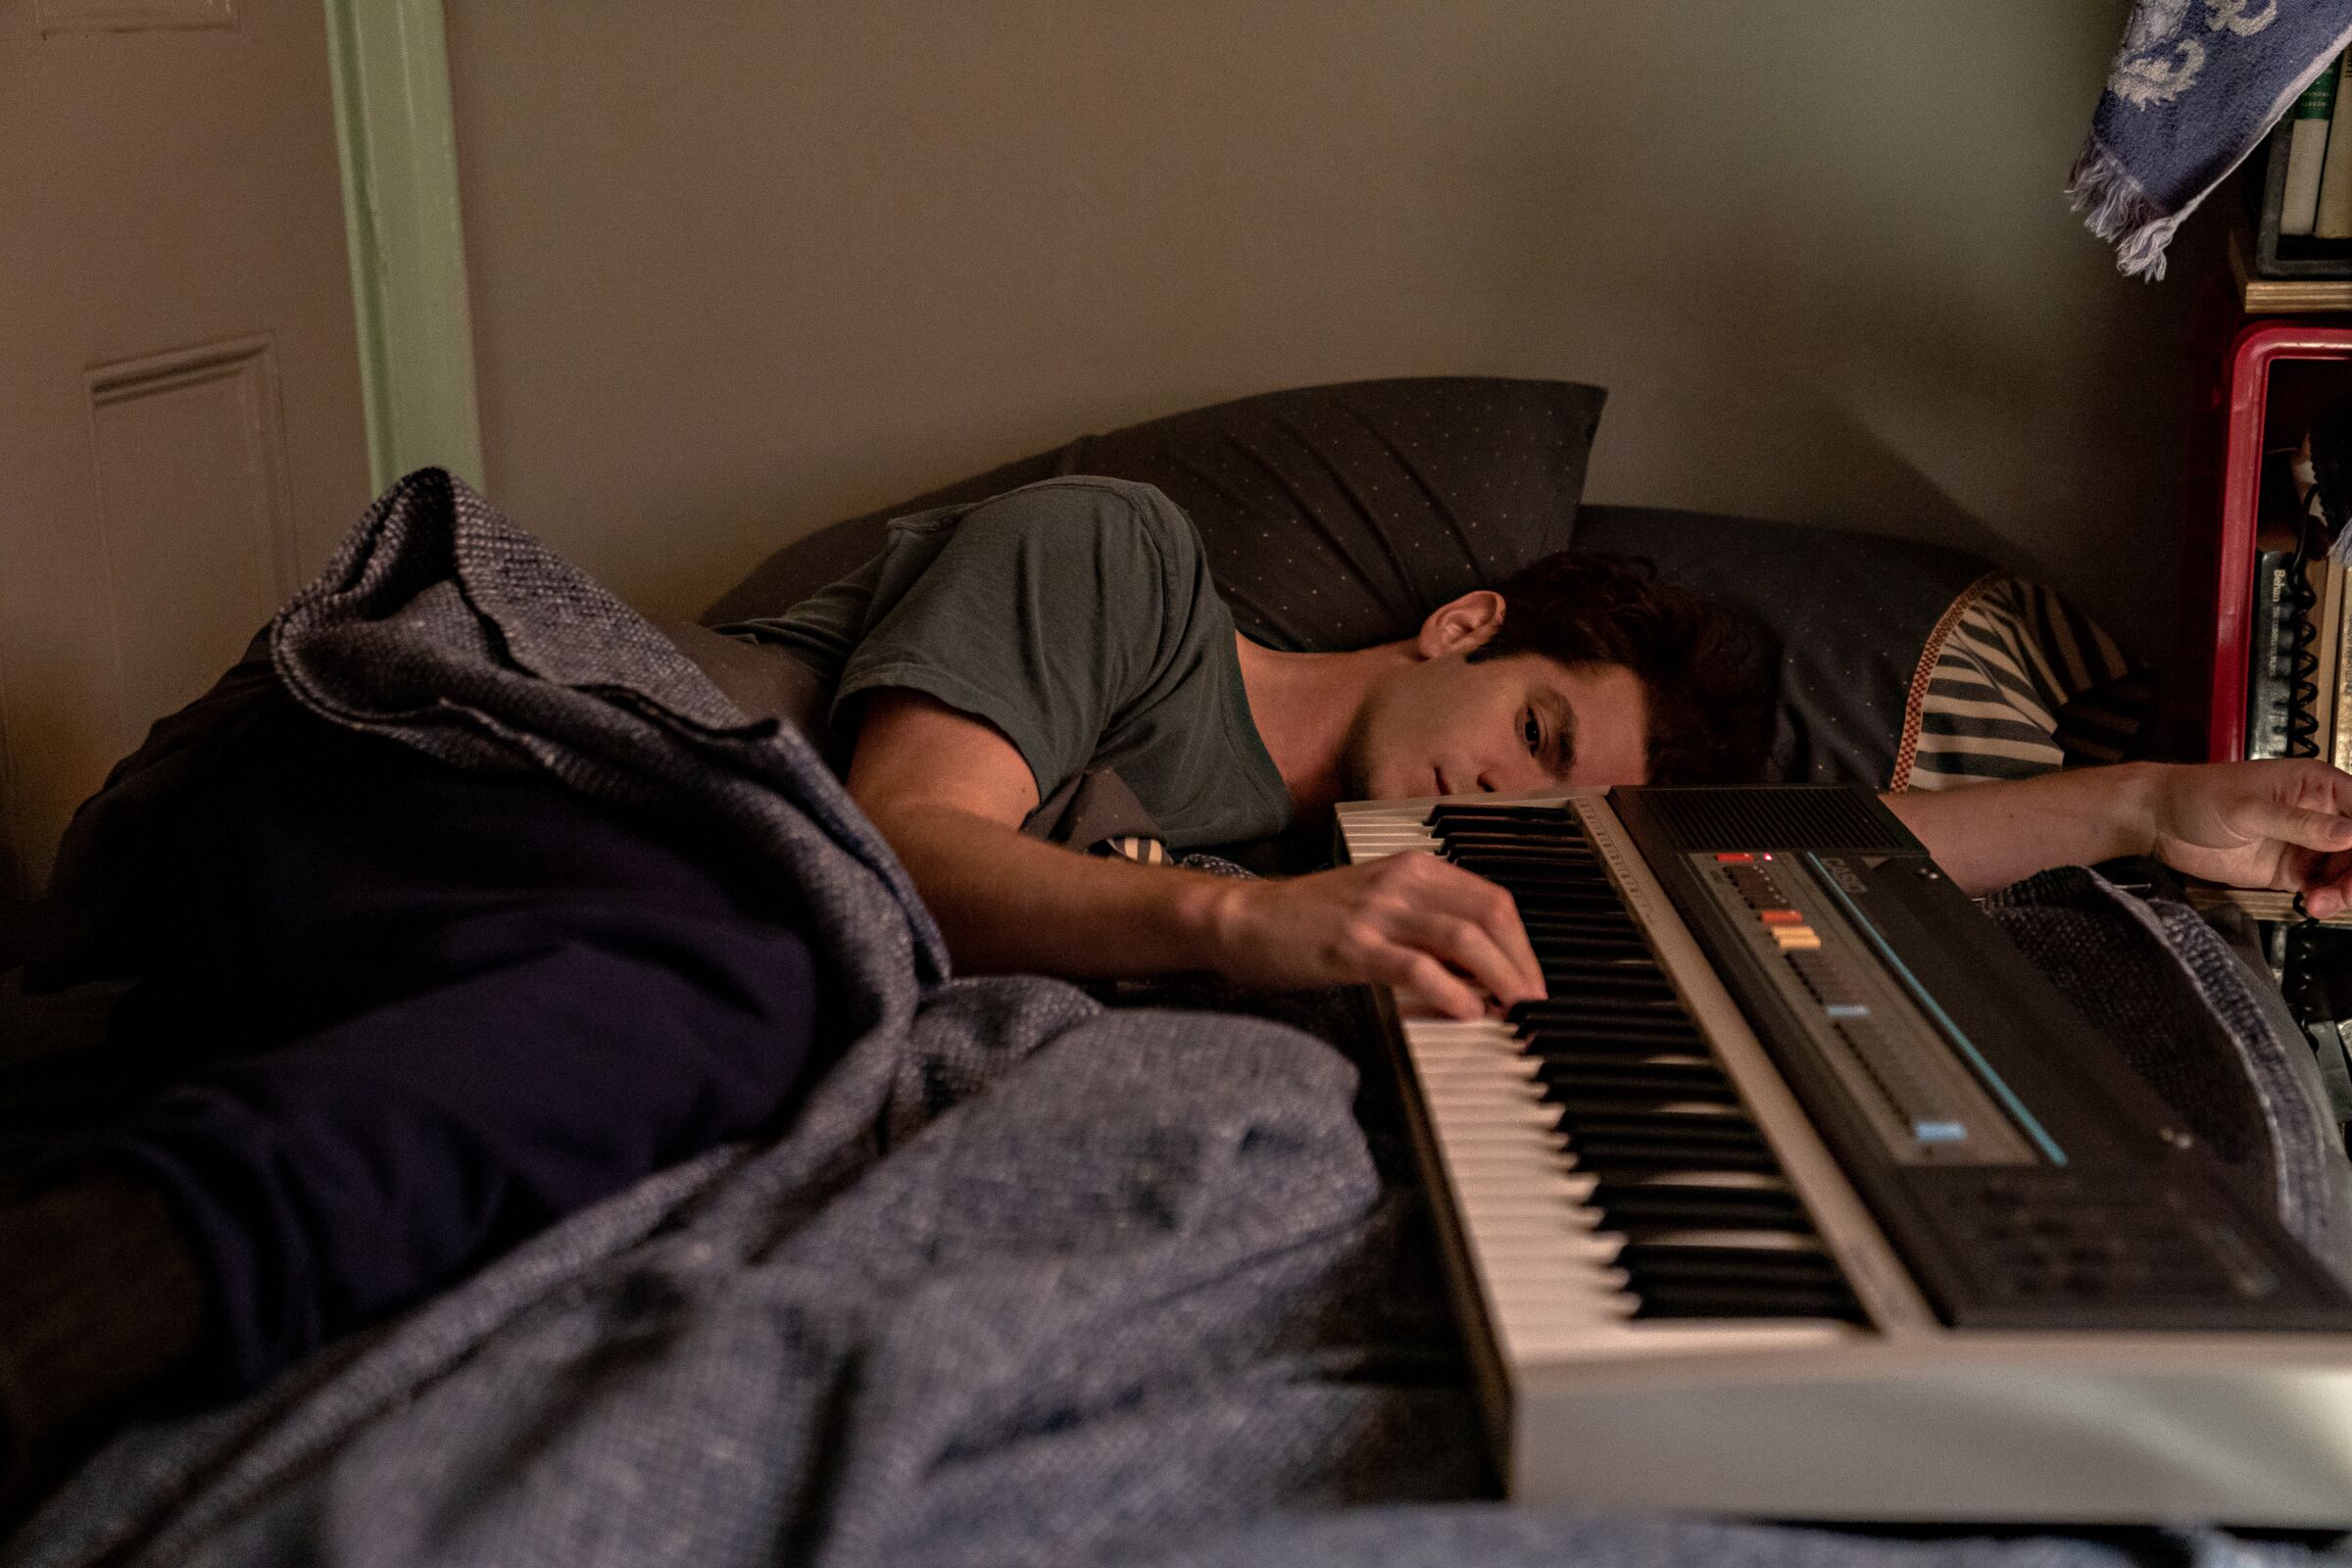 A man asleep next to a keyboard